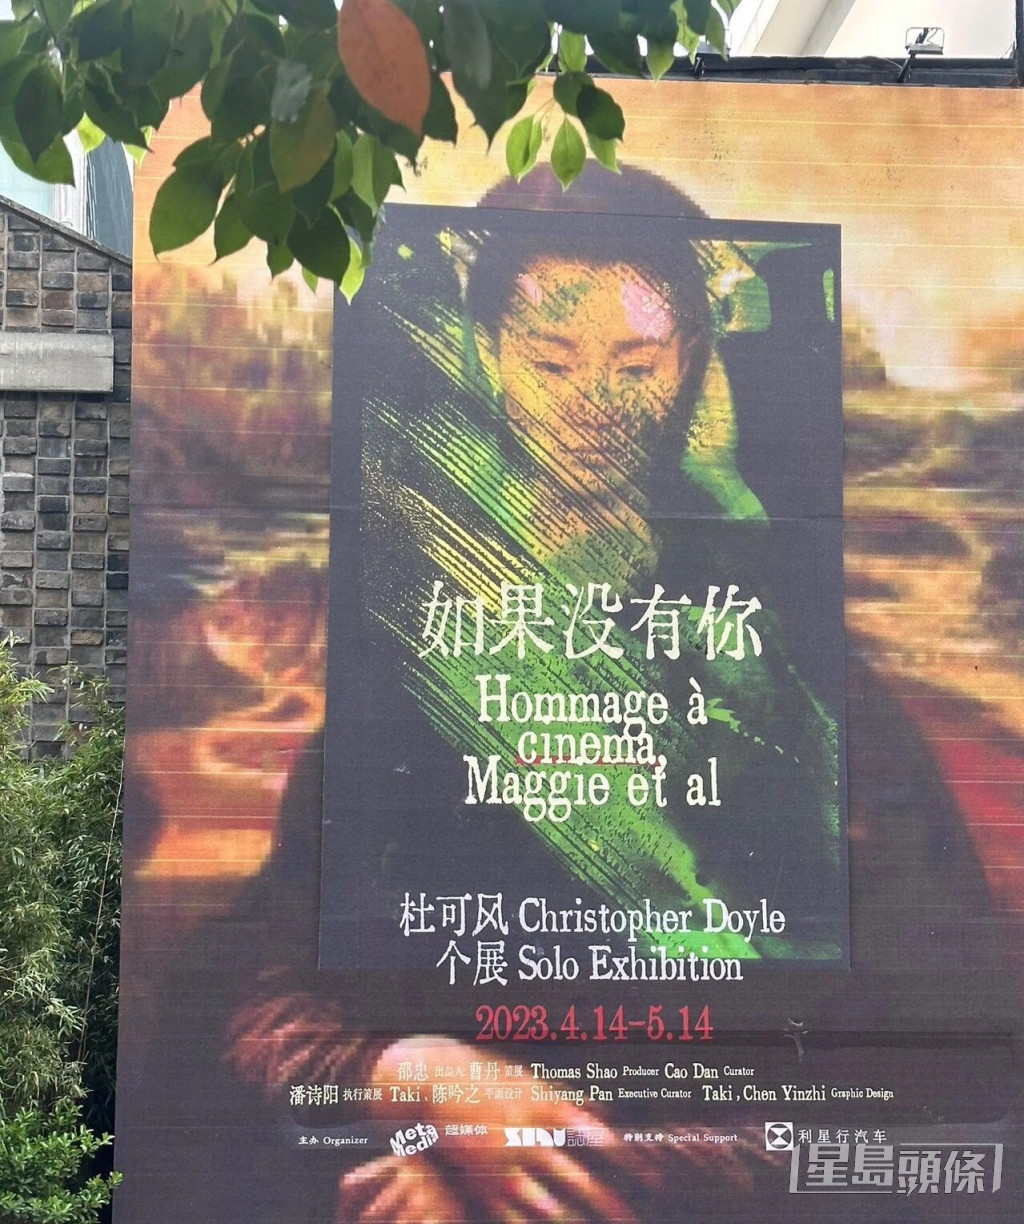 杜可风自上月14日至本月15日在上海举行个人展览《如果没有你》。